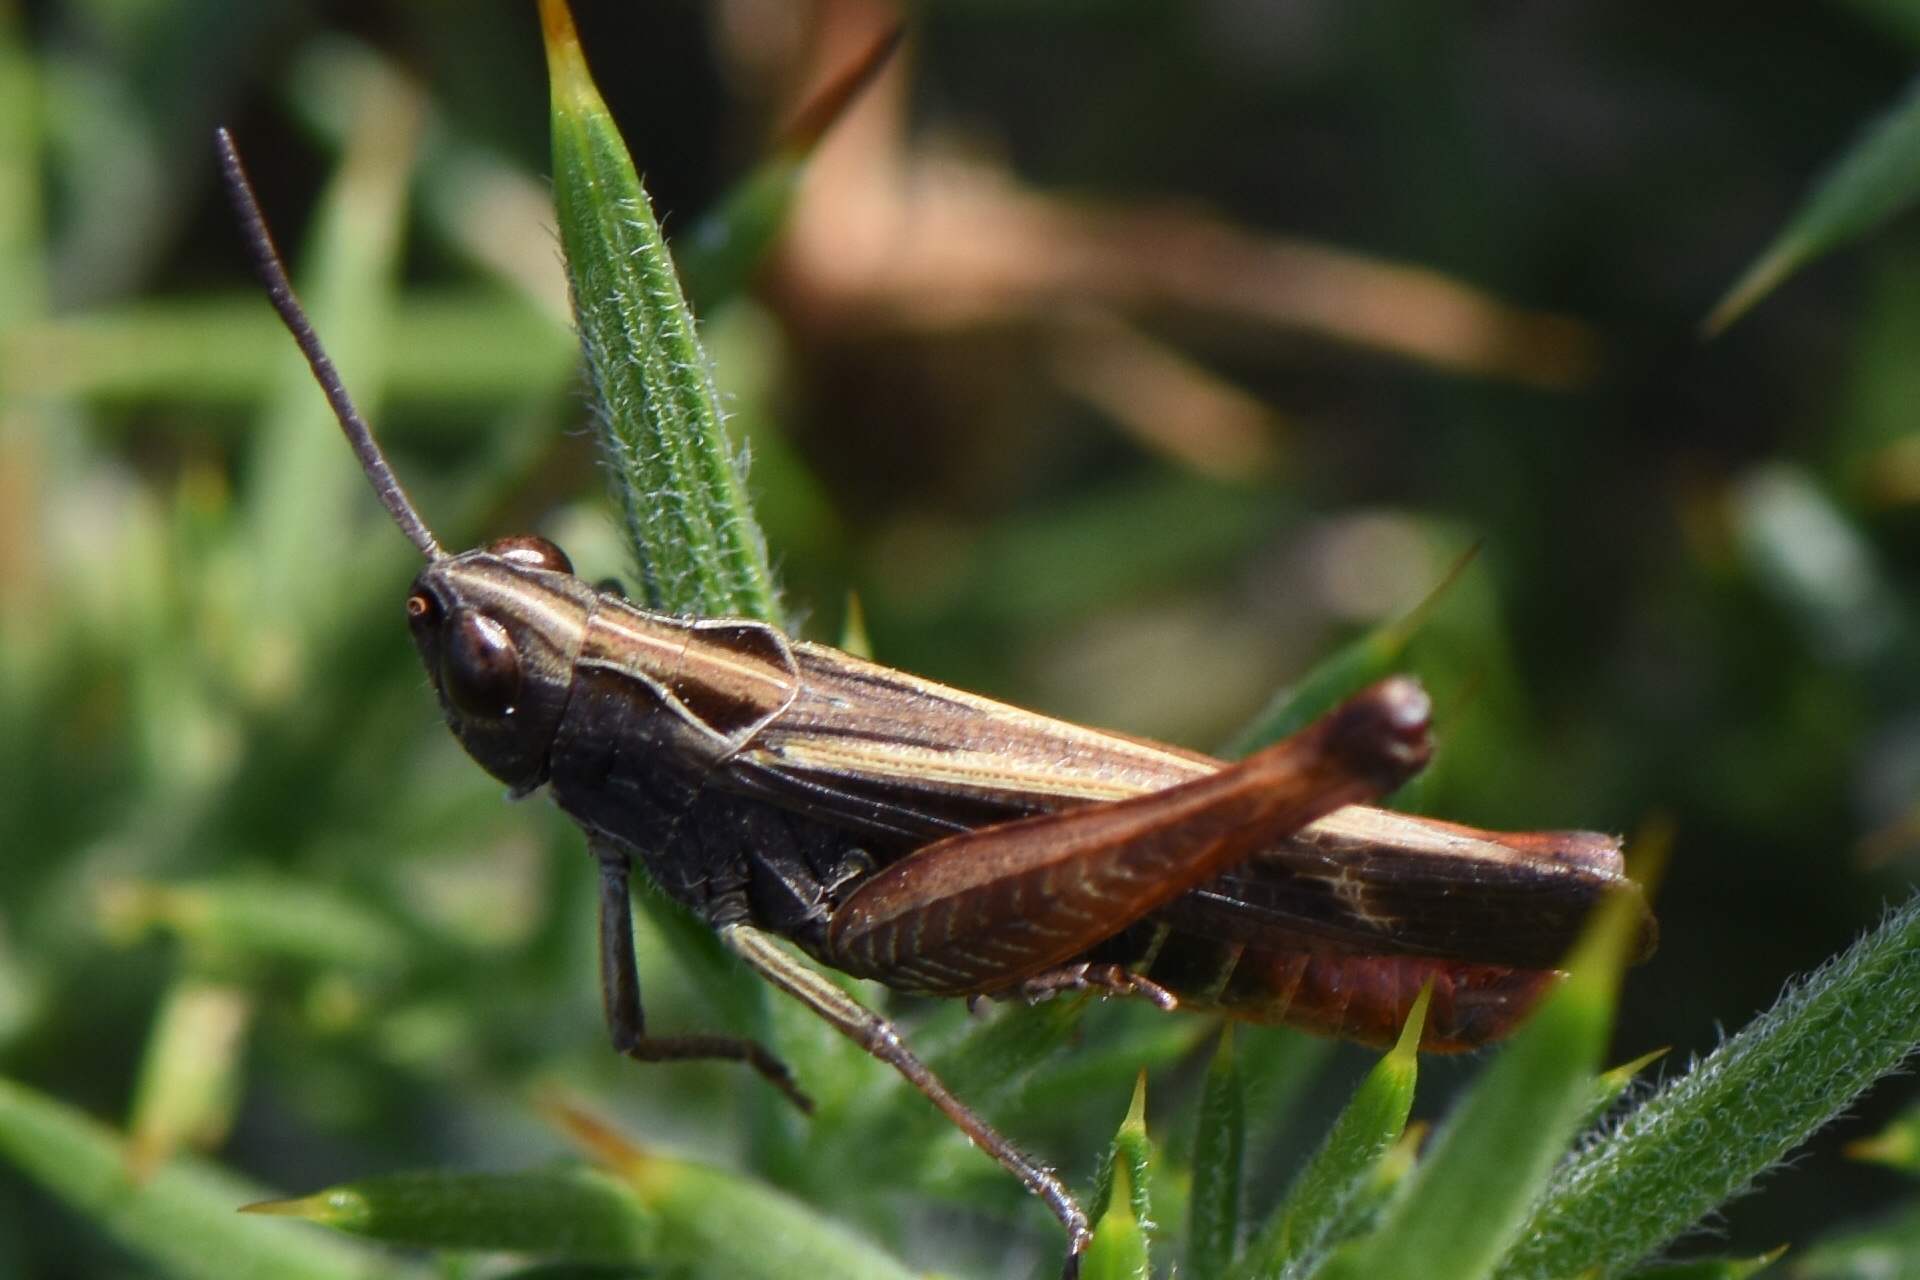 Forest grasshopper photo